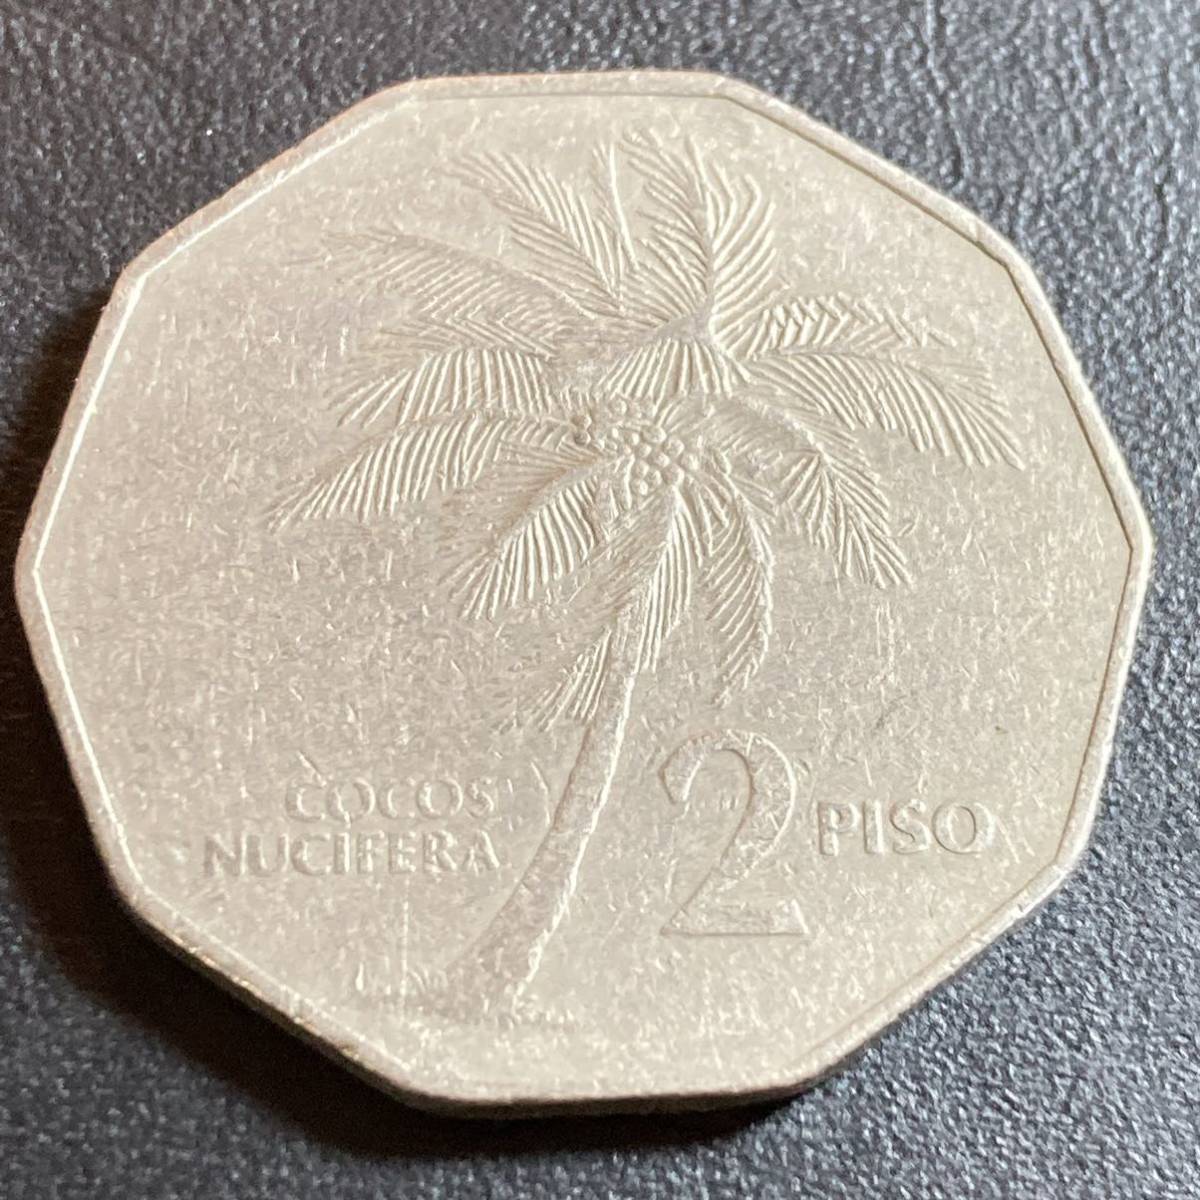 【a075】古銭外国銭 フィリピン ヤシの木 2ペソコイン 1983年(^ ^)_画像1